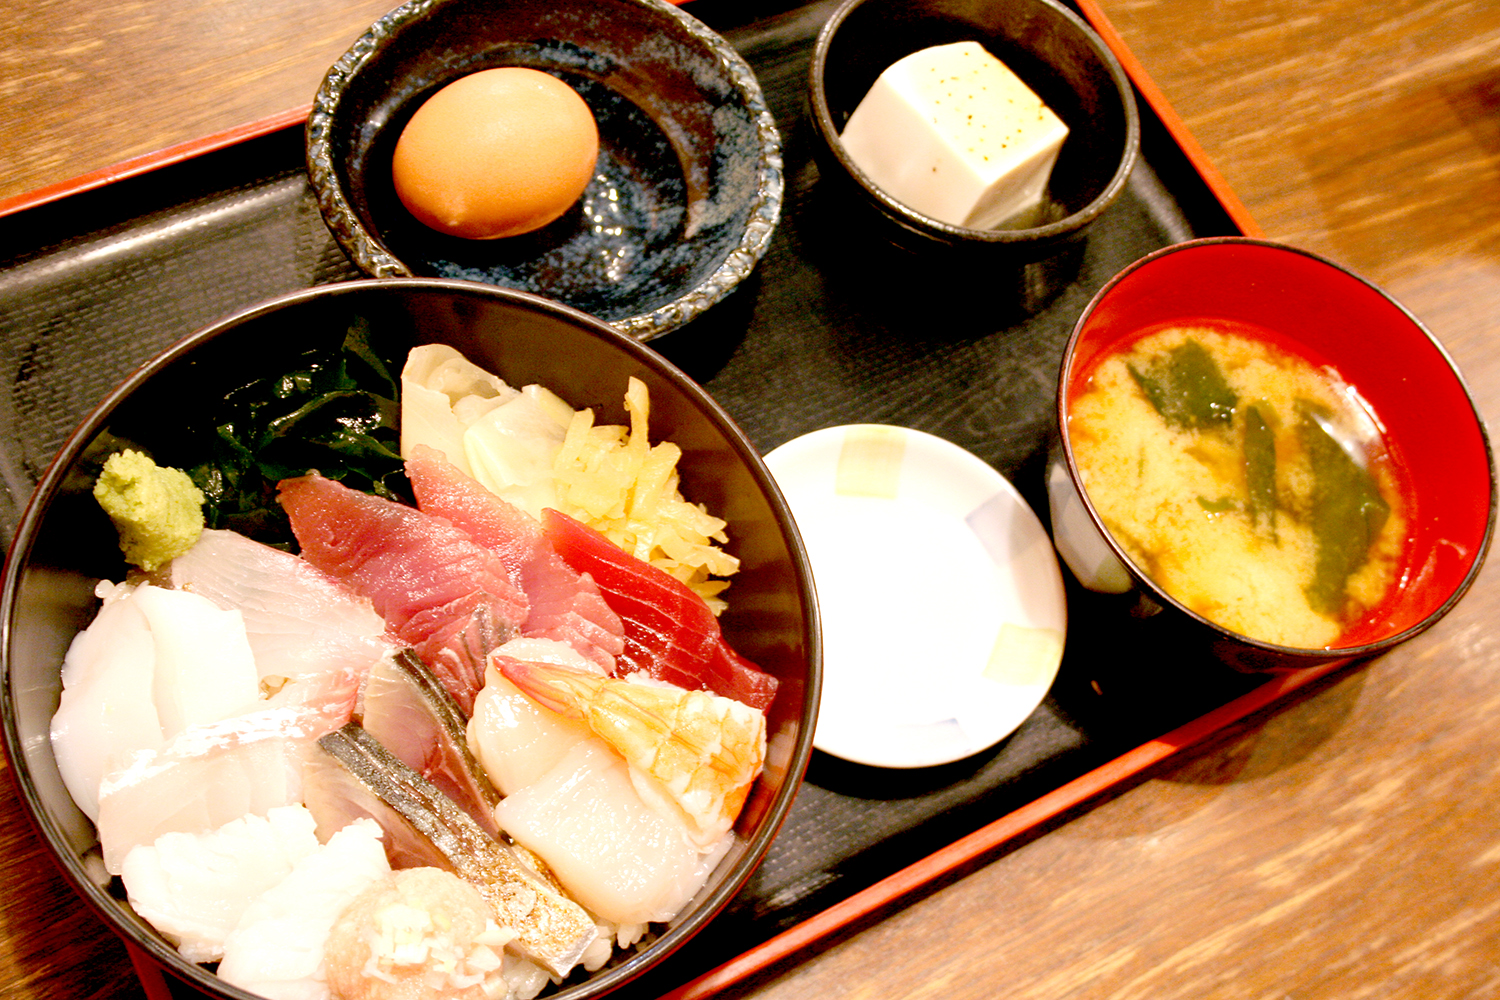 おまかせ海鮮丼950円。味噌汁、温泉たまご、小鉢に納豆、味付け海苔が付いてくる。